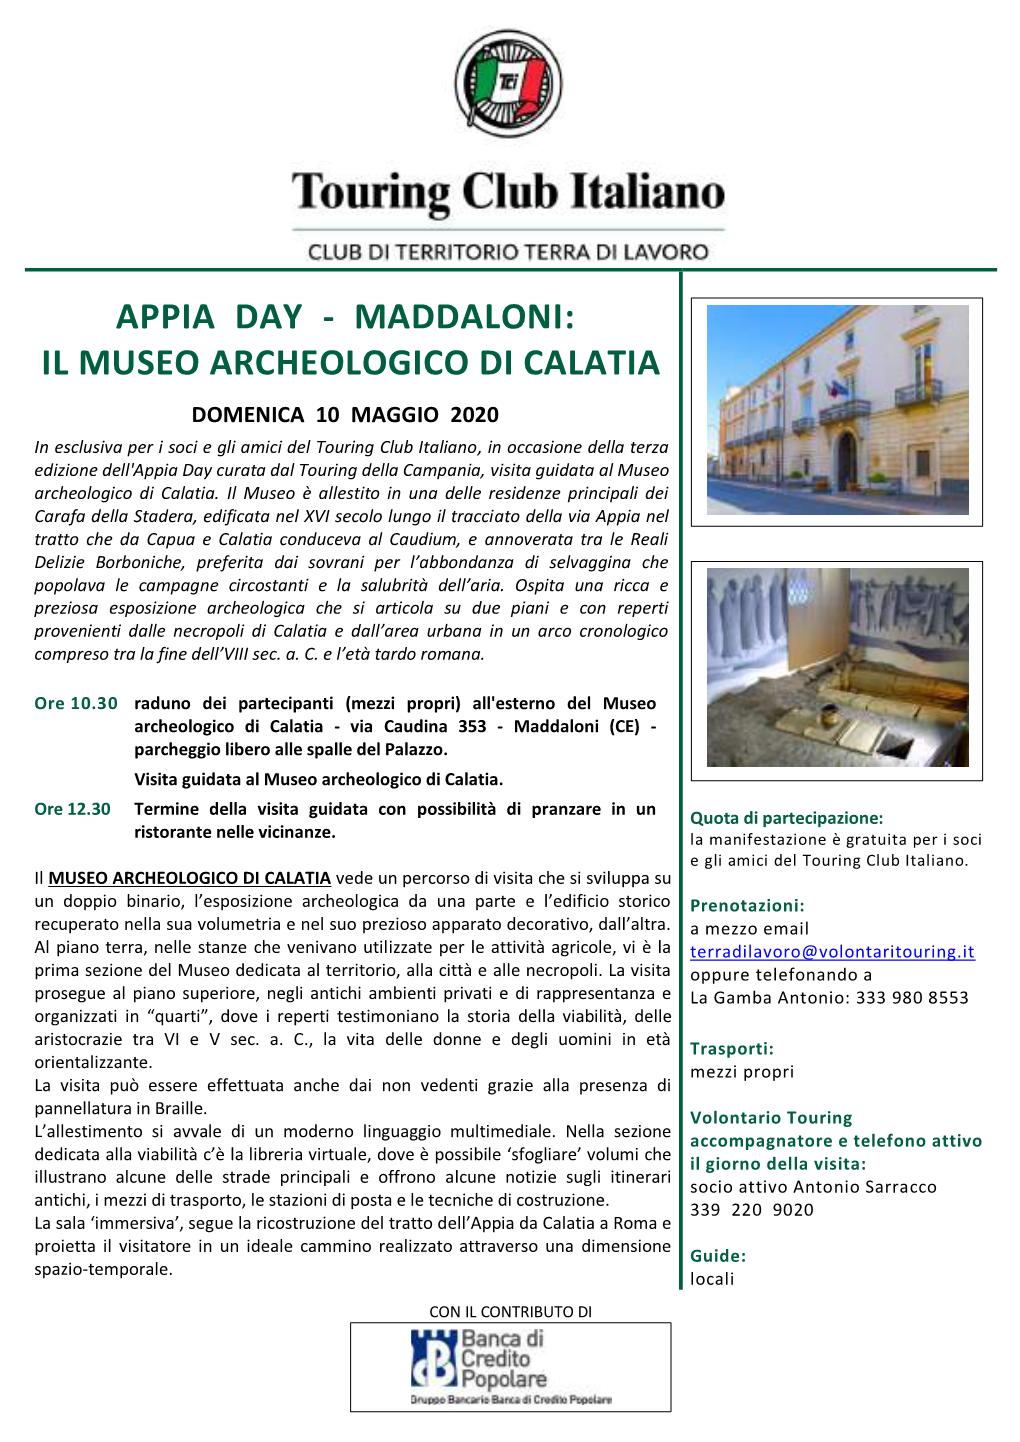 Appia Day - Maddaloni: Il Museo Archeologico Di Calatia